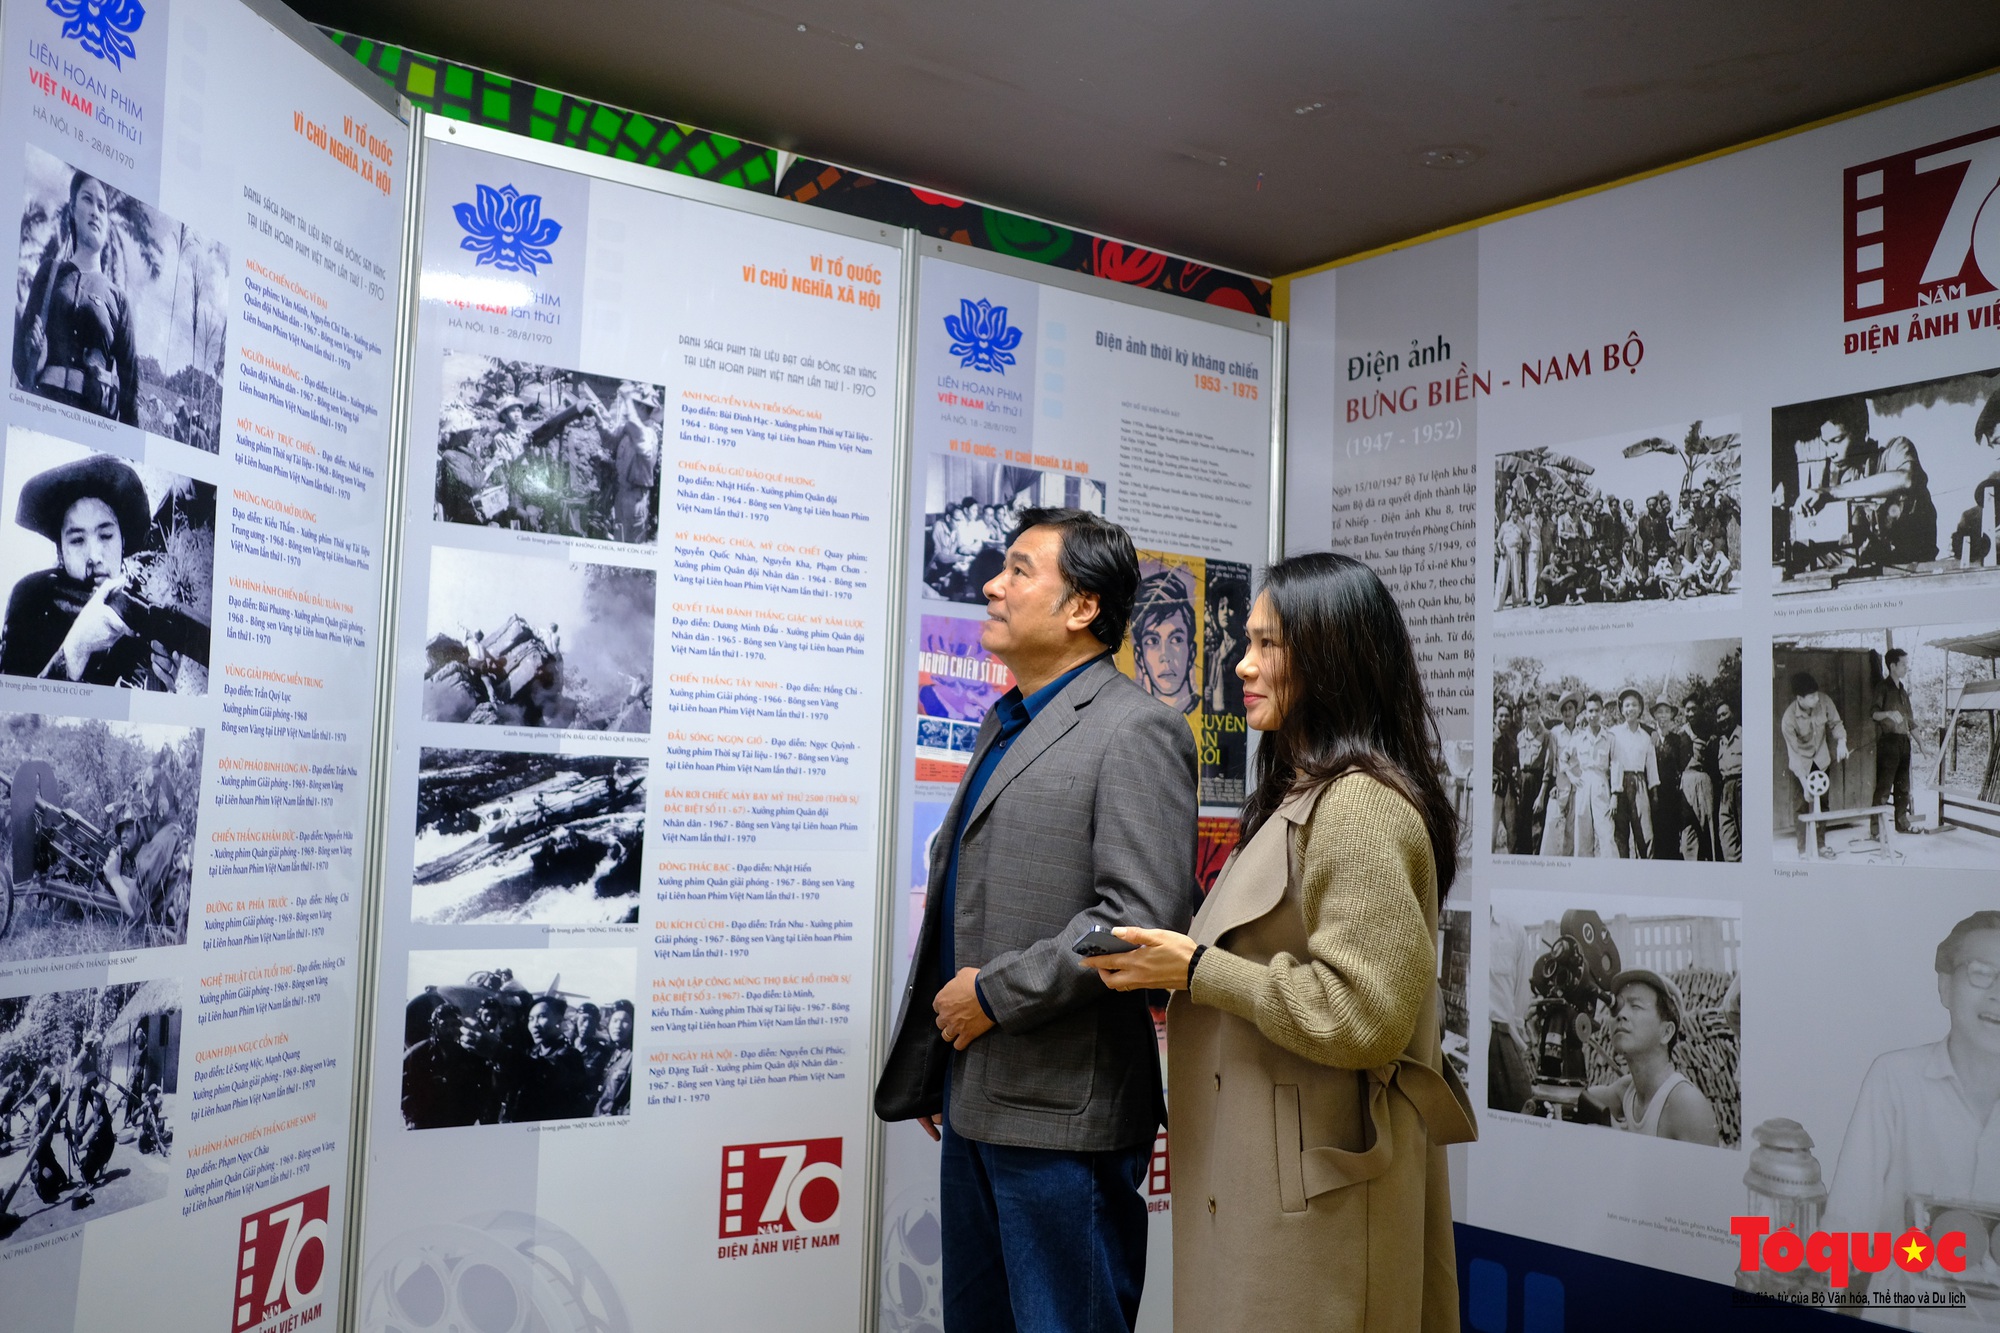 Hơn 200 tư liệu, hiện vật quý được trưng bày kỷ niệm 70 năm Điện ảnh Cách mạng Việt Nam - Ảnh 9.